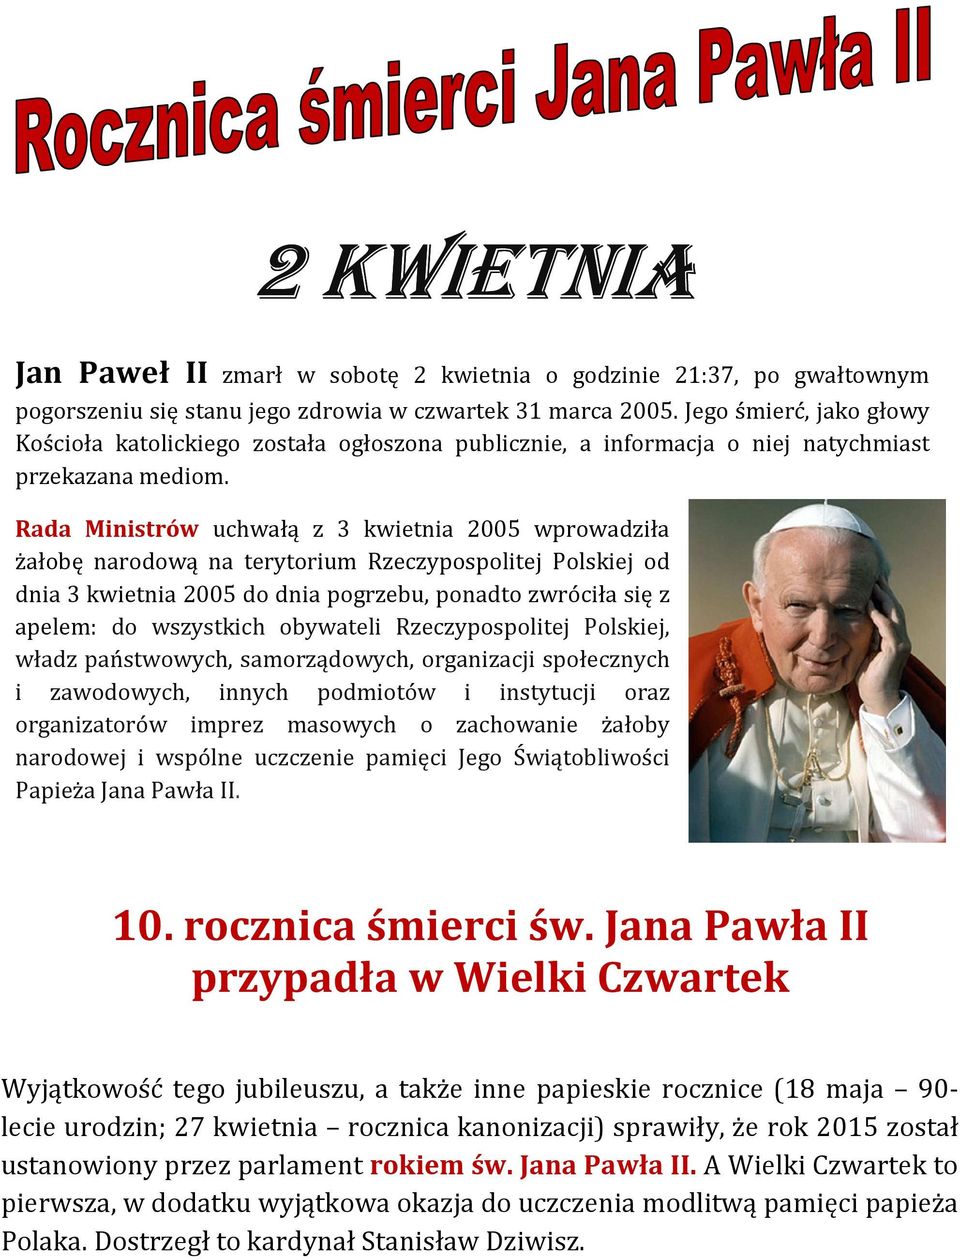 Rada Ministrów uchwałą z 3 kwietnia 2005 wprowadziła żałobę narodową na terytorium Rzeczypospolitej Polskiej od dnia 3 kwietnia 2005 do dnia pogrzebu, ponadto zwróciła się z apelem: do wszystkich